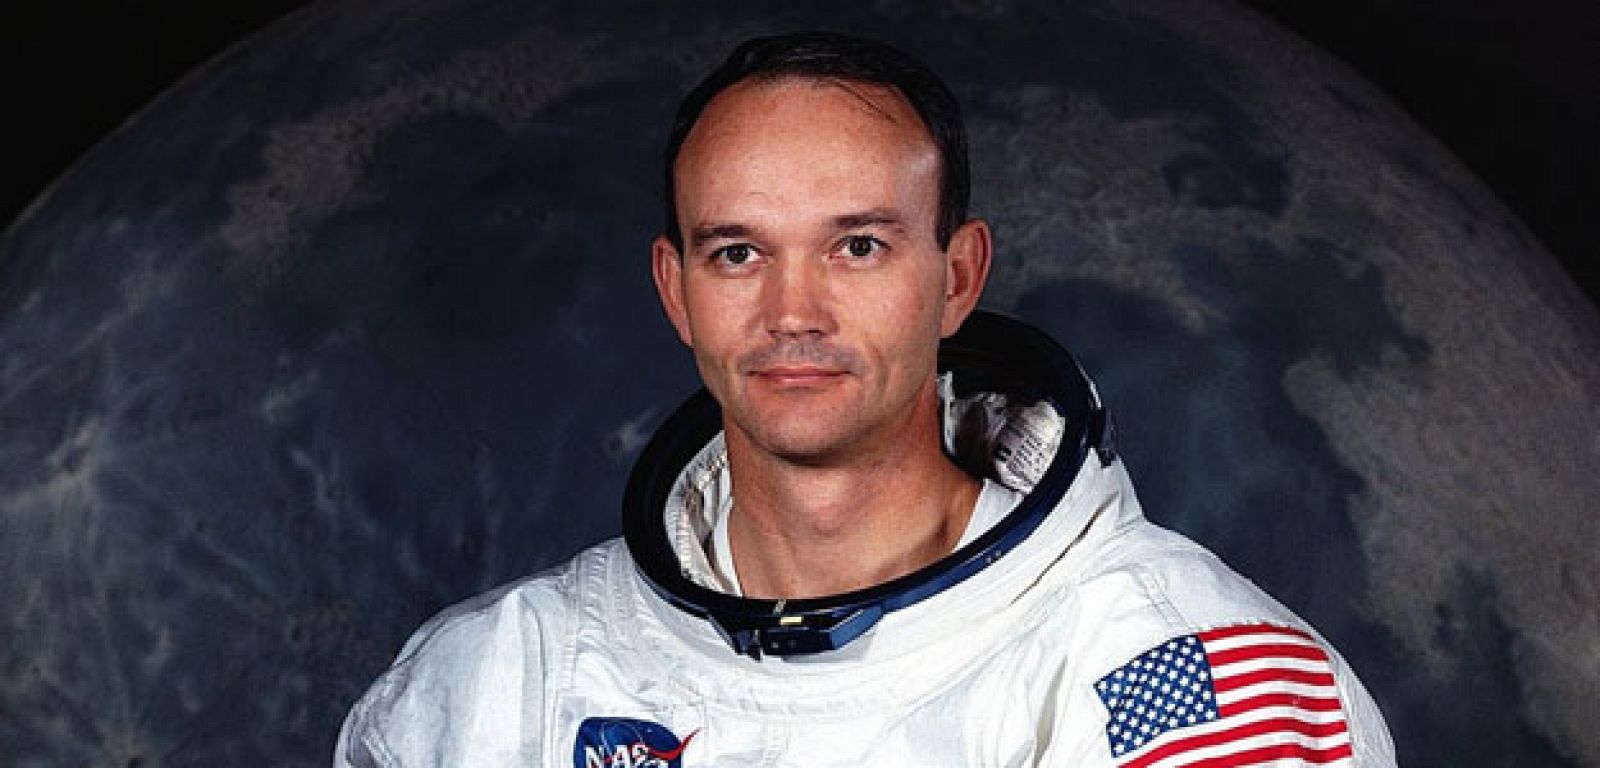 Michael Collins, piloto del Apolo 11. Permaneció en la nave mientras sus compañeros pisaban la Luna por primera vez en la Historia.